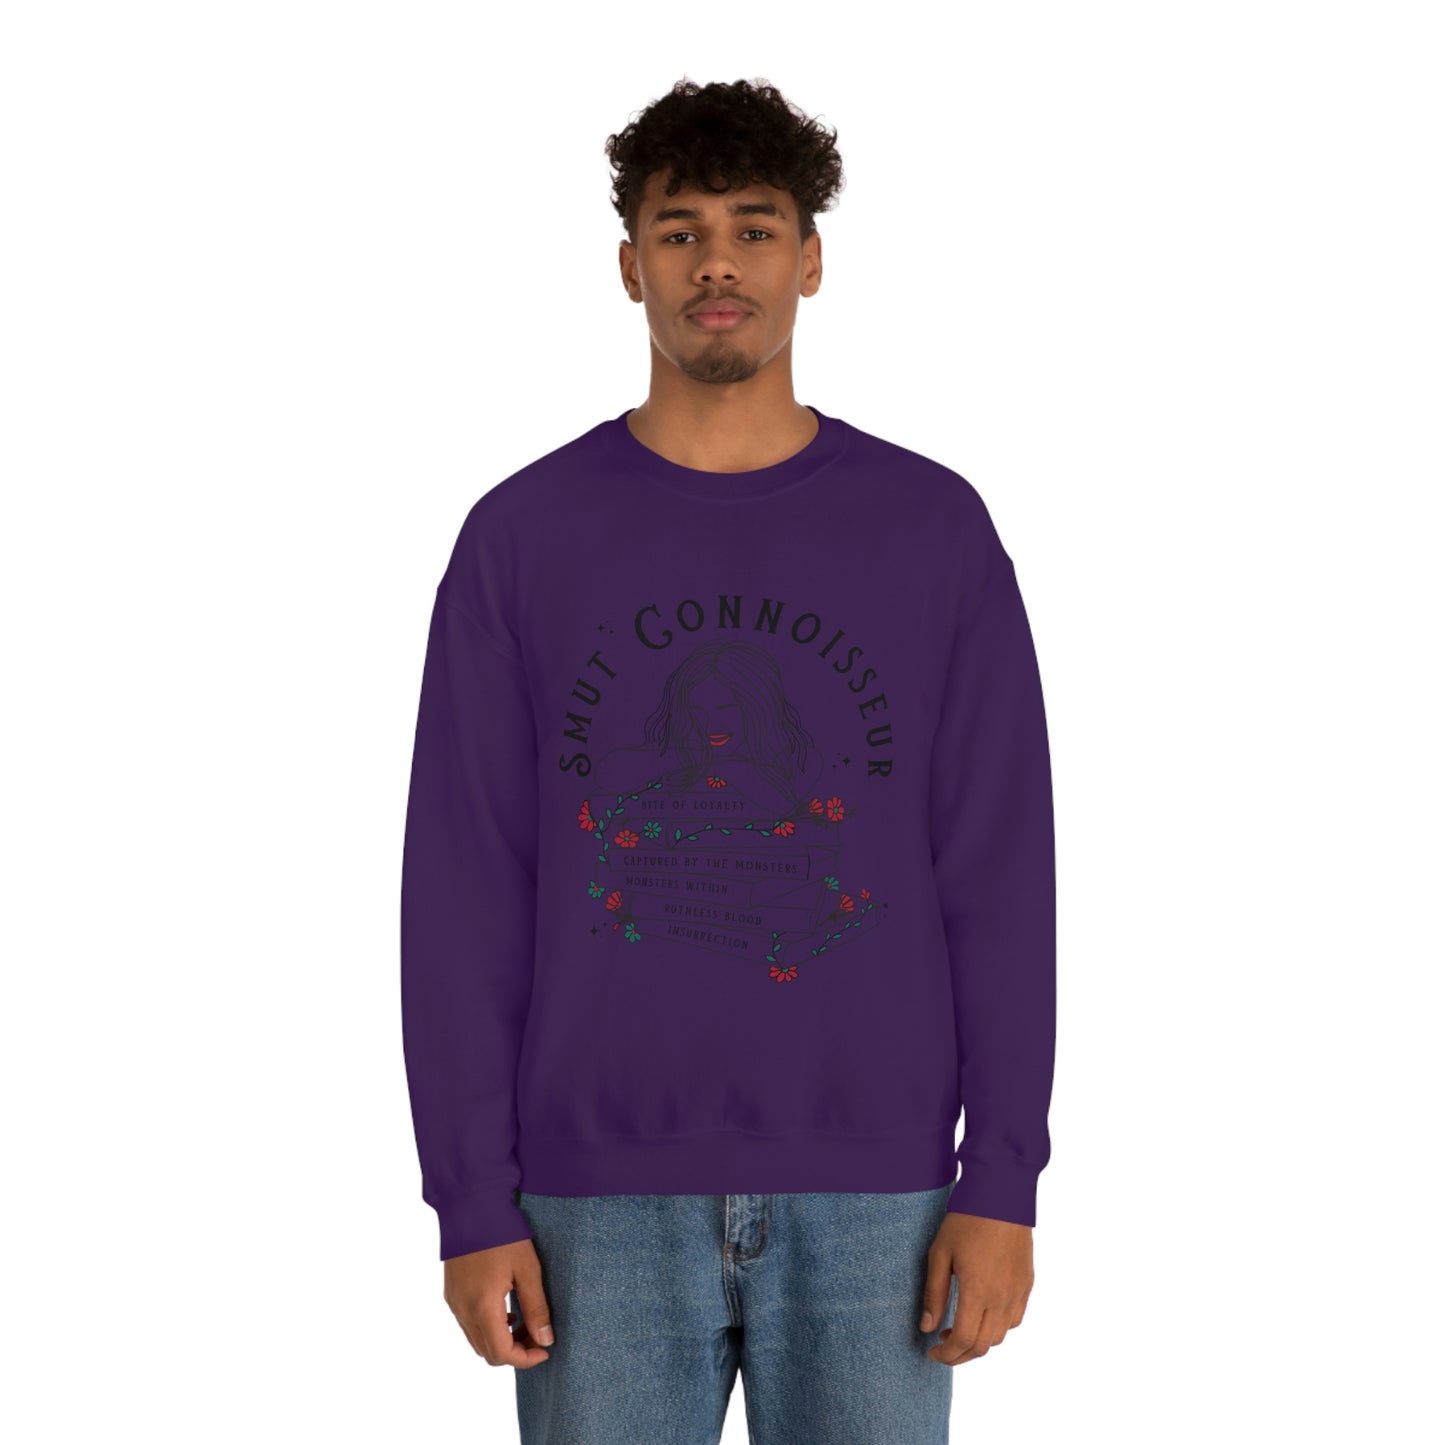 Smut Connoisseur Crewneck Sweatshirt